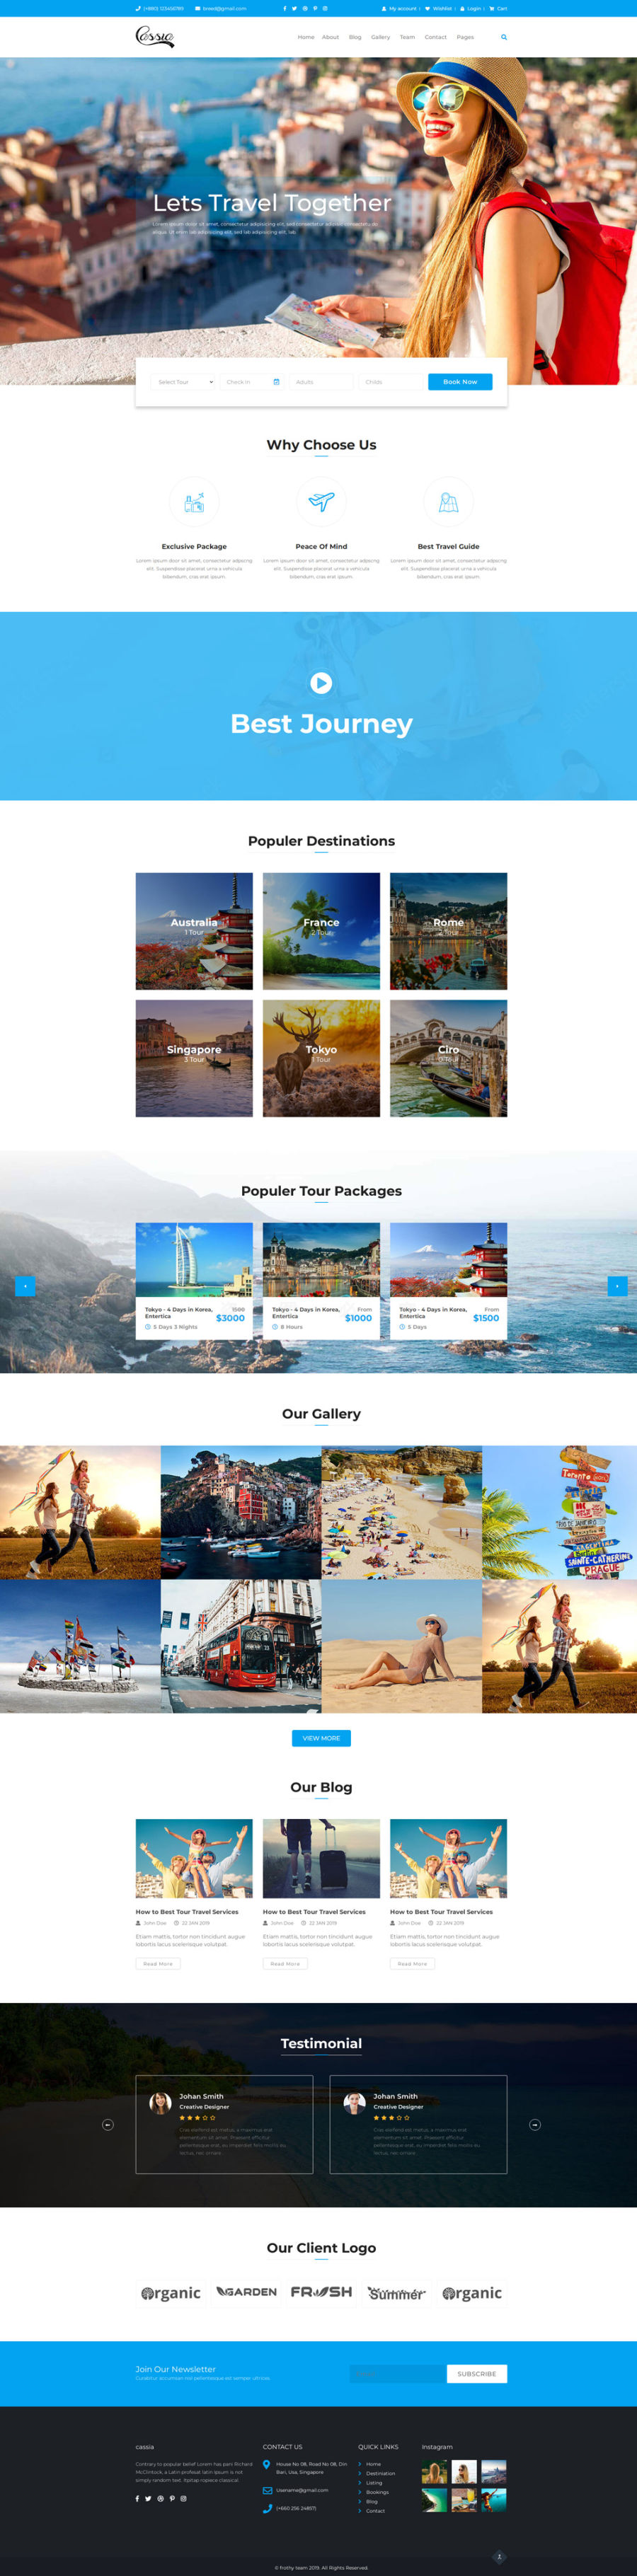 Casia蓝色大气的出国旅游图文展示公司网站模板